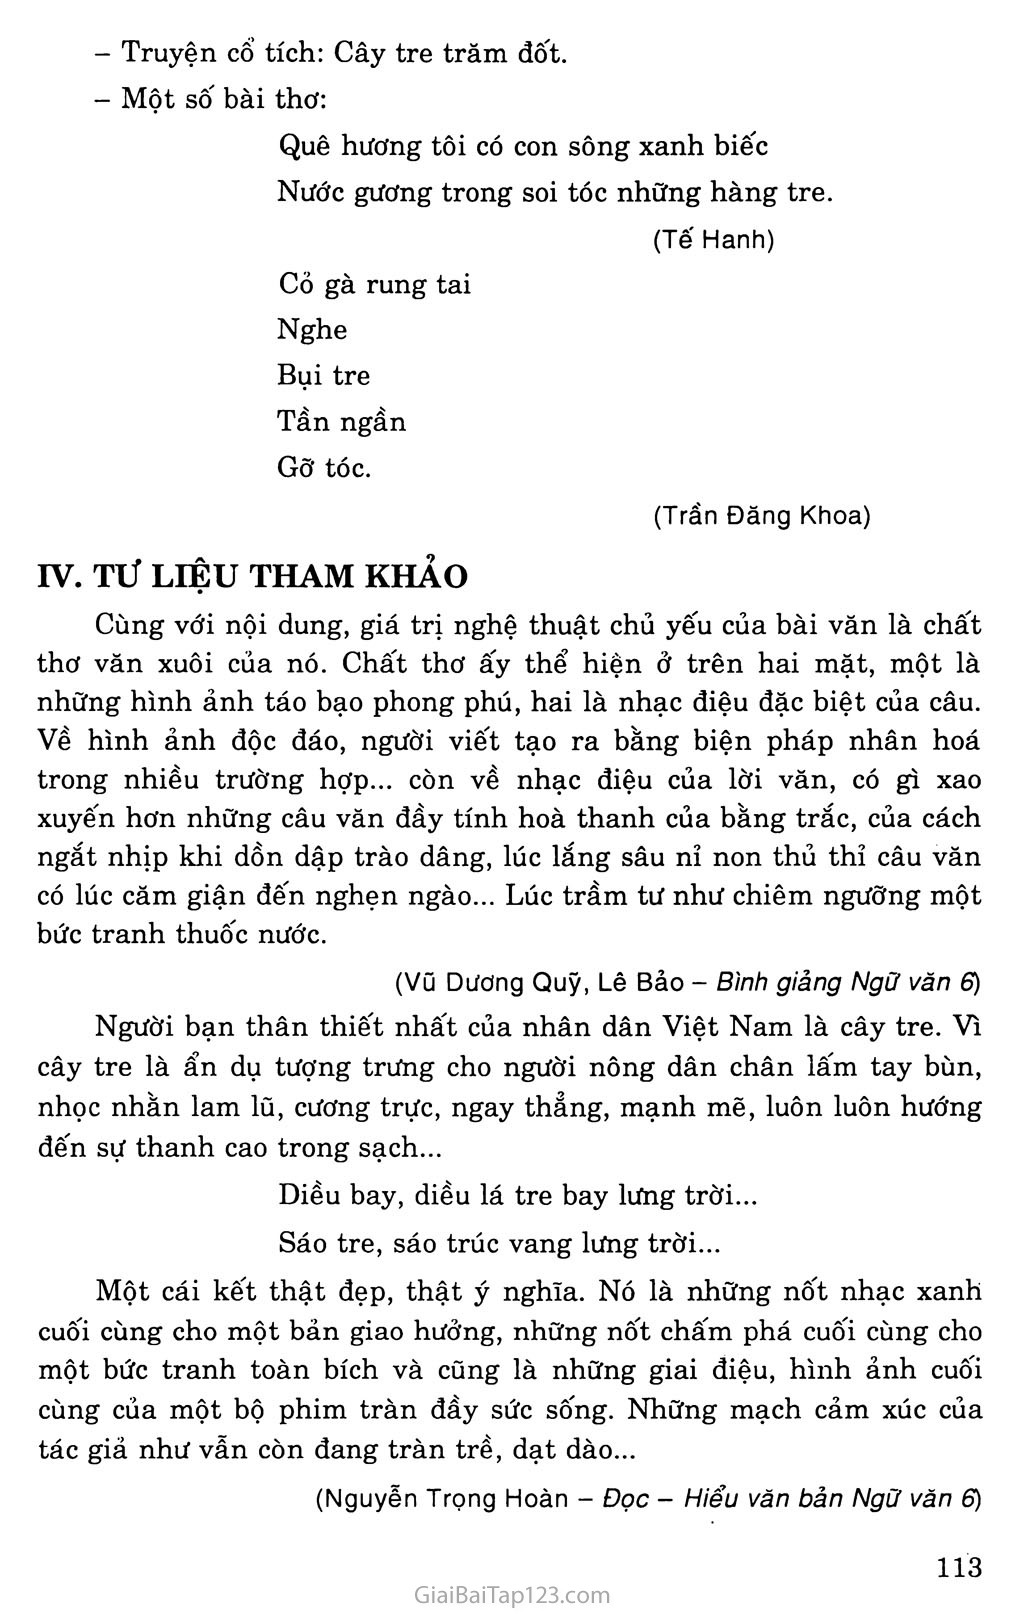 Cây tre Việt Nam trang 4